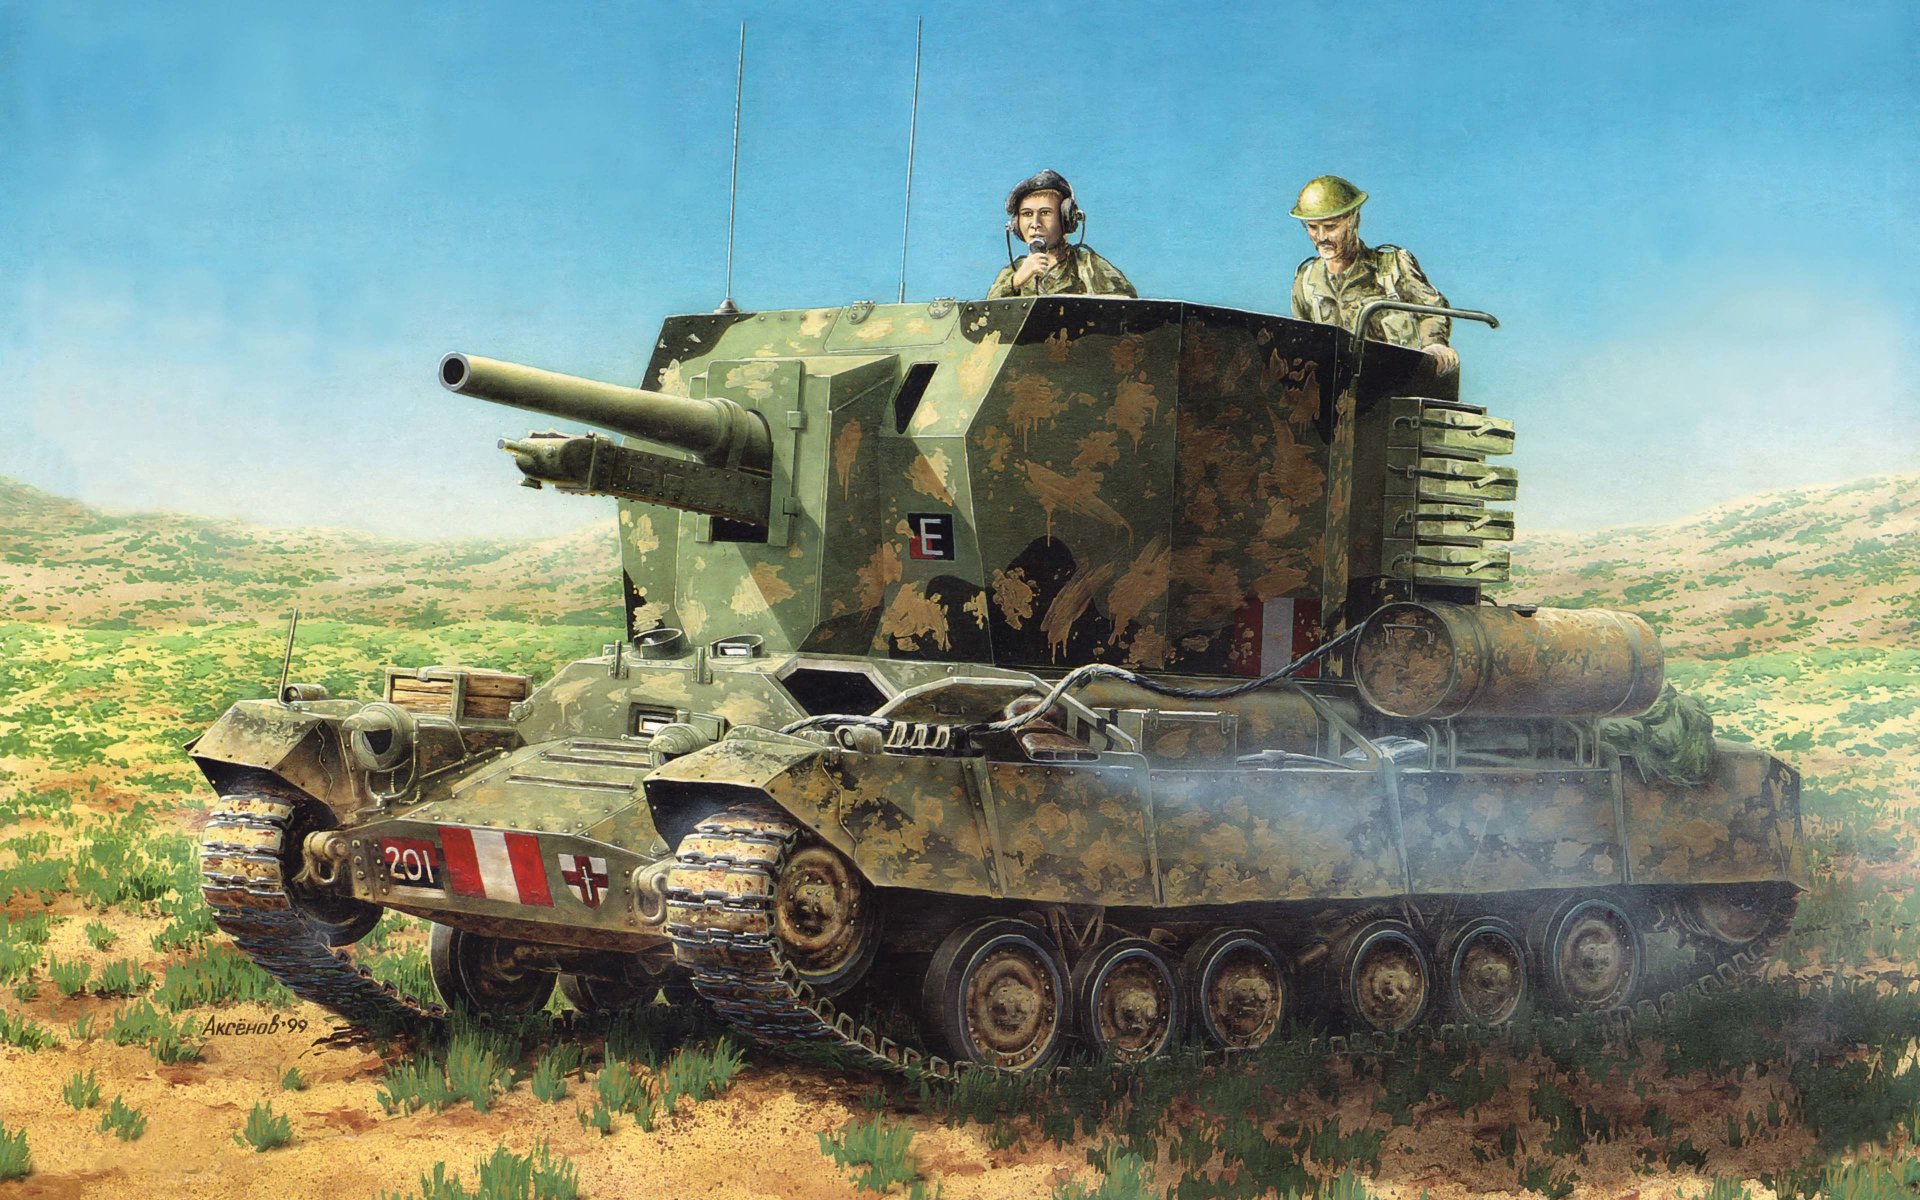 арт танк сау епископ бишоп британская самоходно артиллерийская установка класса самоходных гаубиц второй мировой войны построенная на базе танка валентайн валентина ww2 .